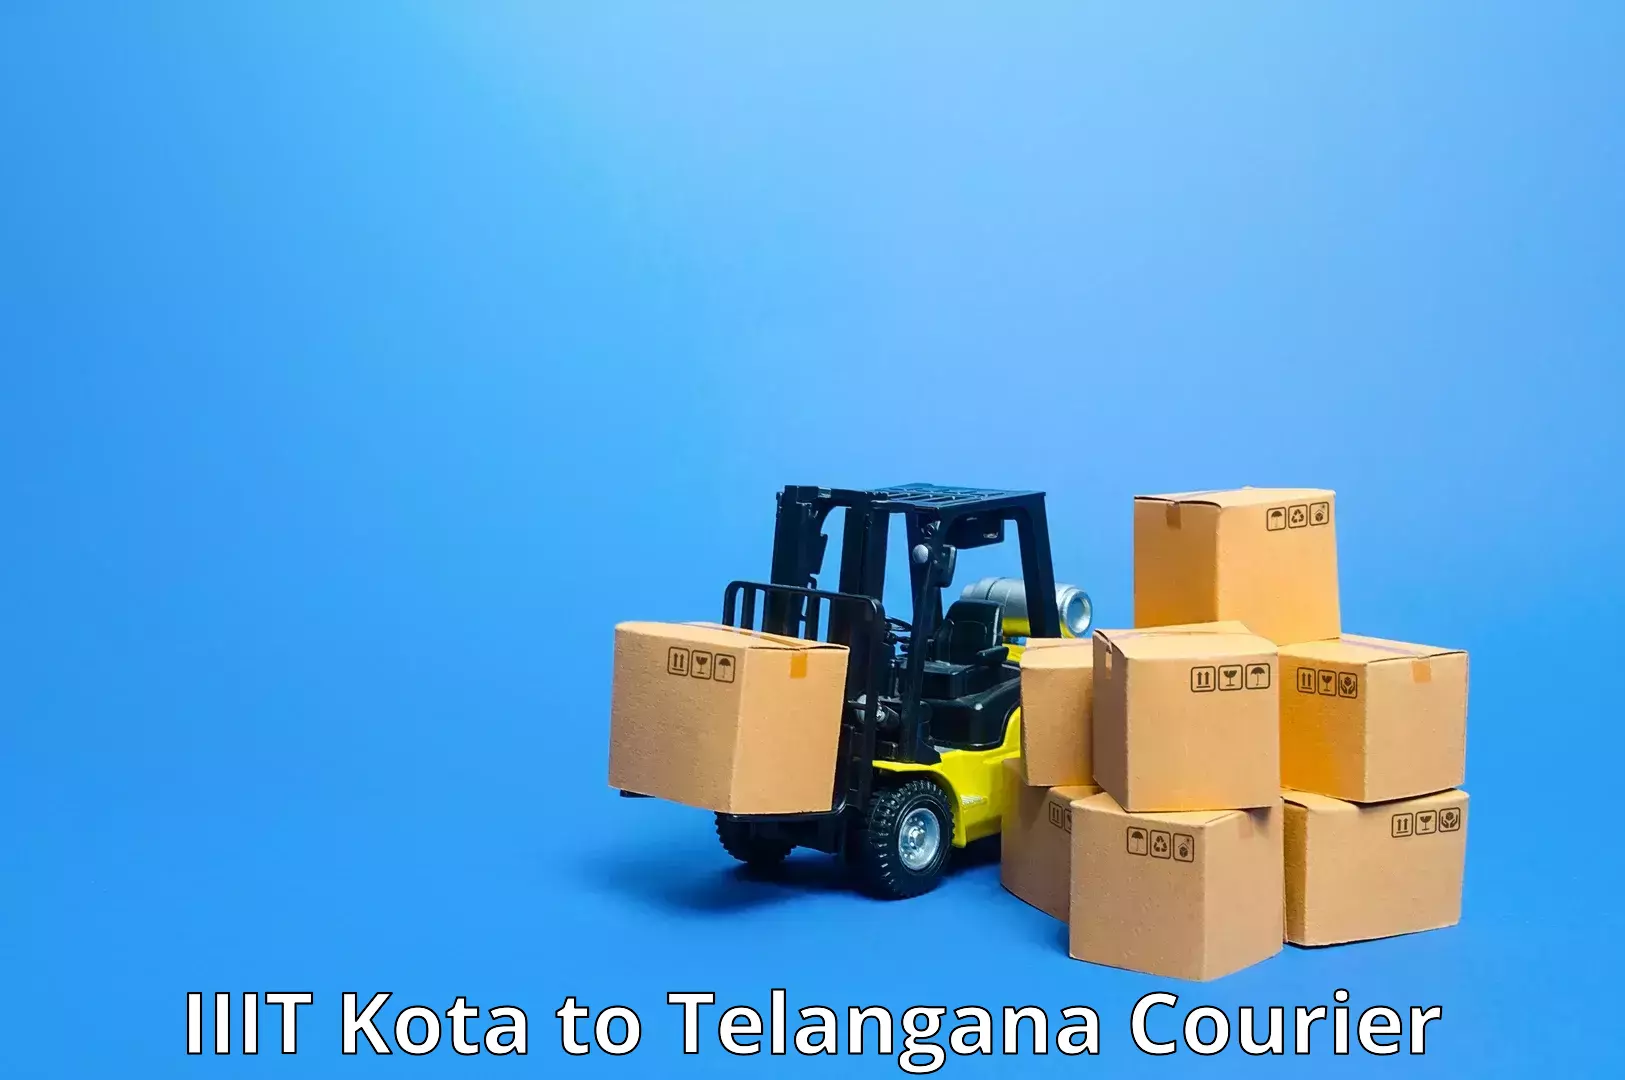 Enhanced tracking features IIIT Kota to Telangana